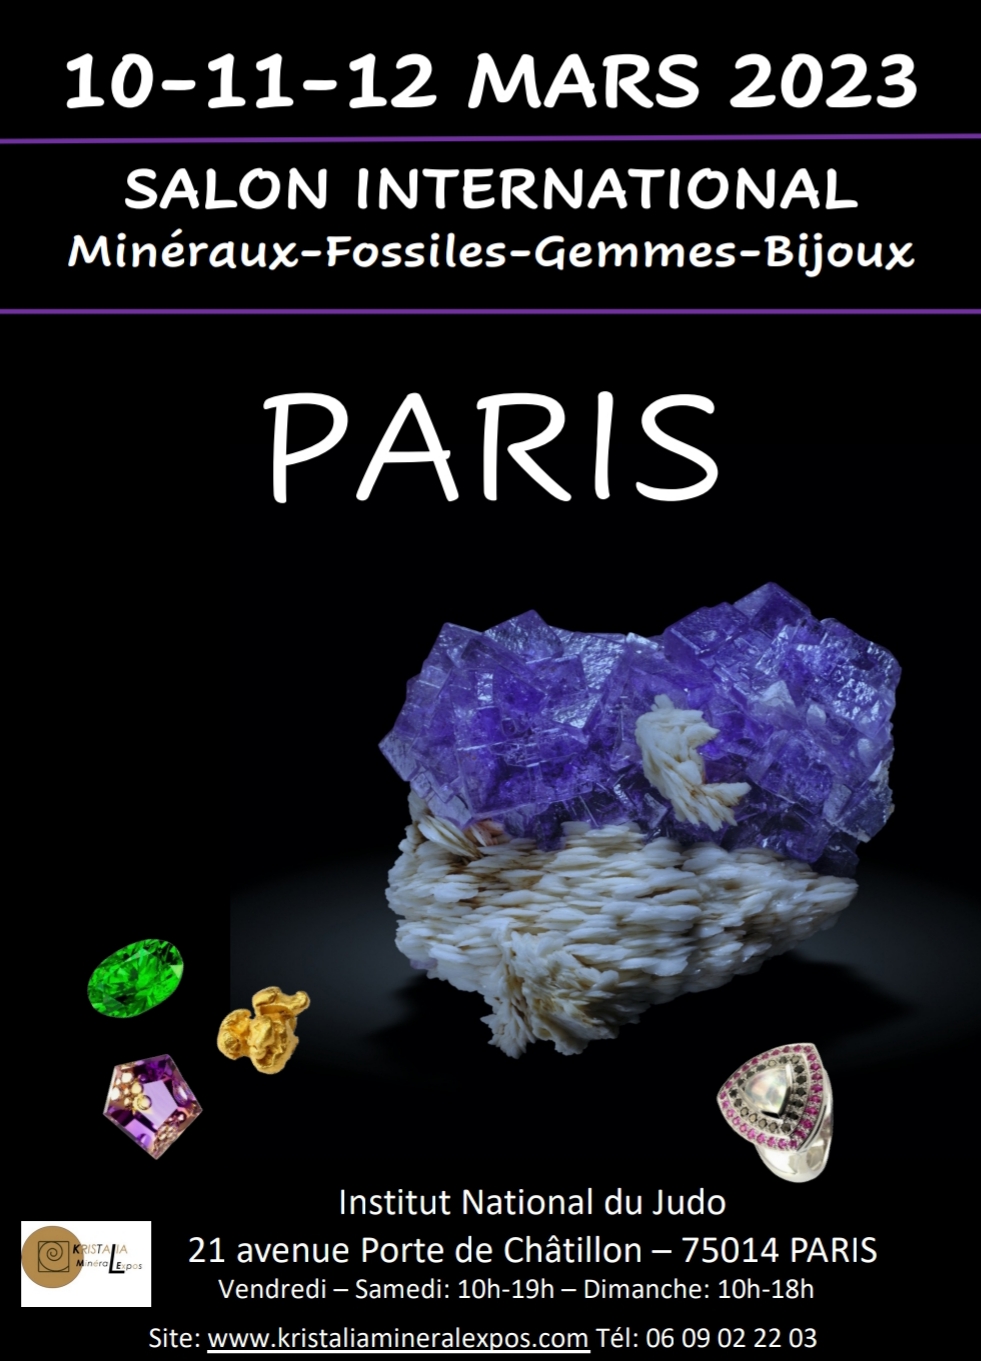 Paris, Salon minéraux, fossiles, pierres précieuses, Paris Institut du Judo